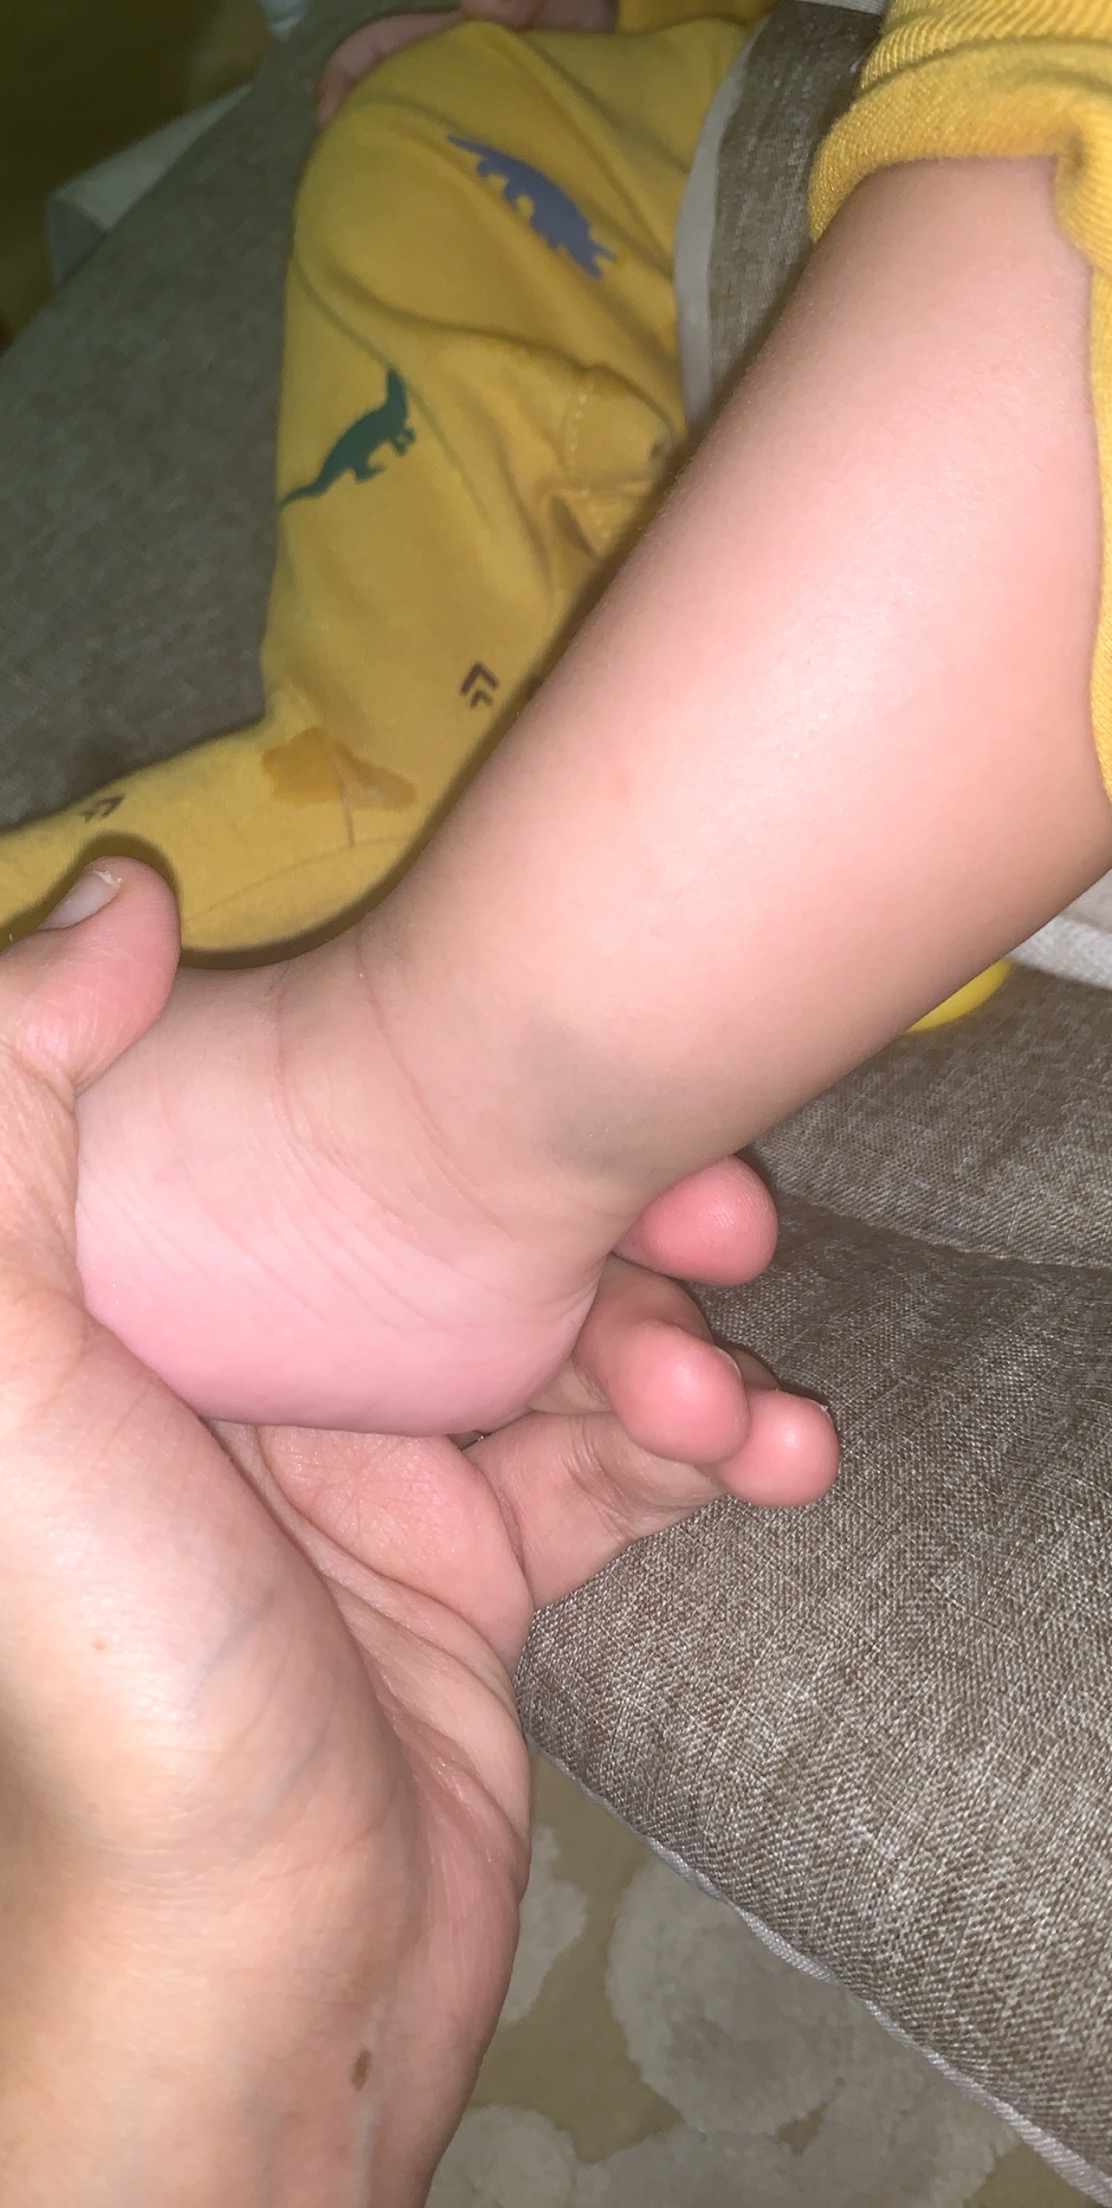 بقعه زرقاء في اسفل ساق الطفل الرضيع